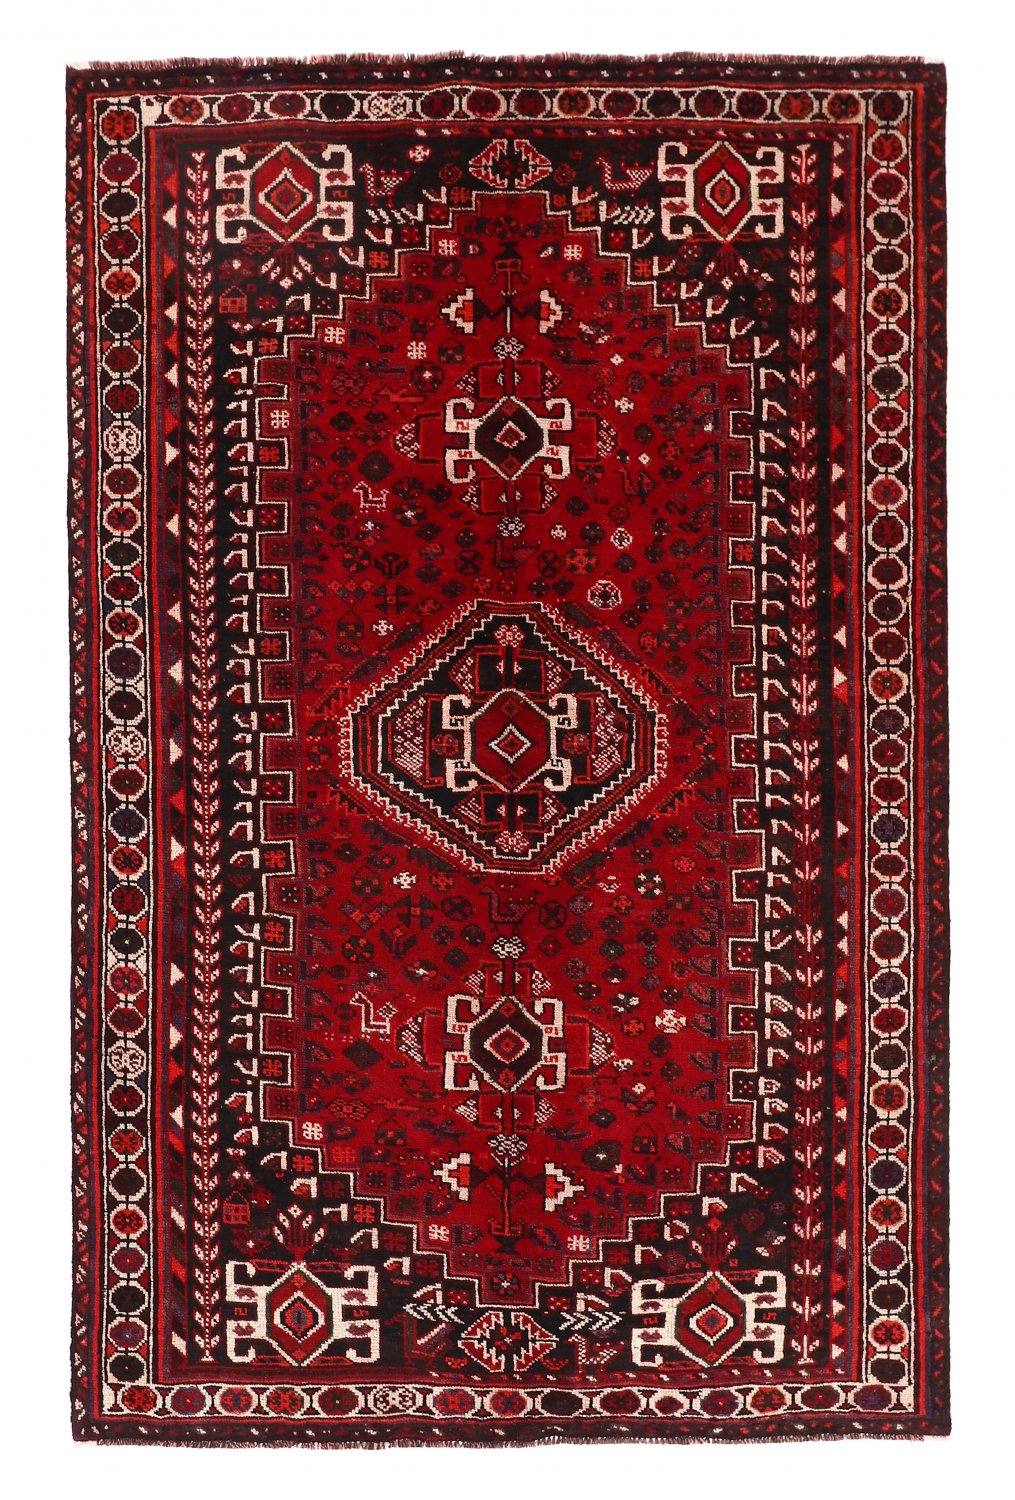 Persian rug Hamedan 256 x 161 cm